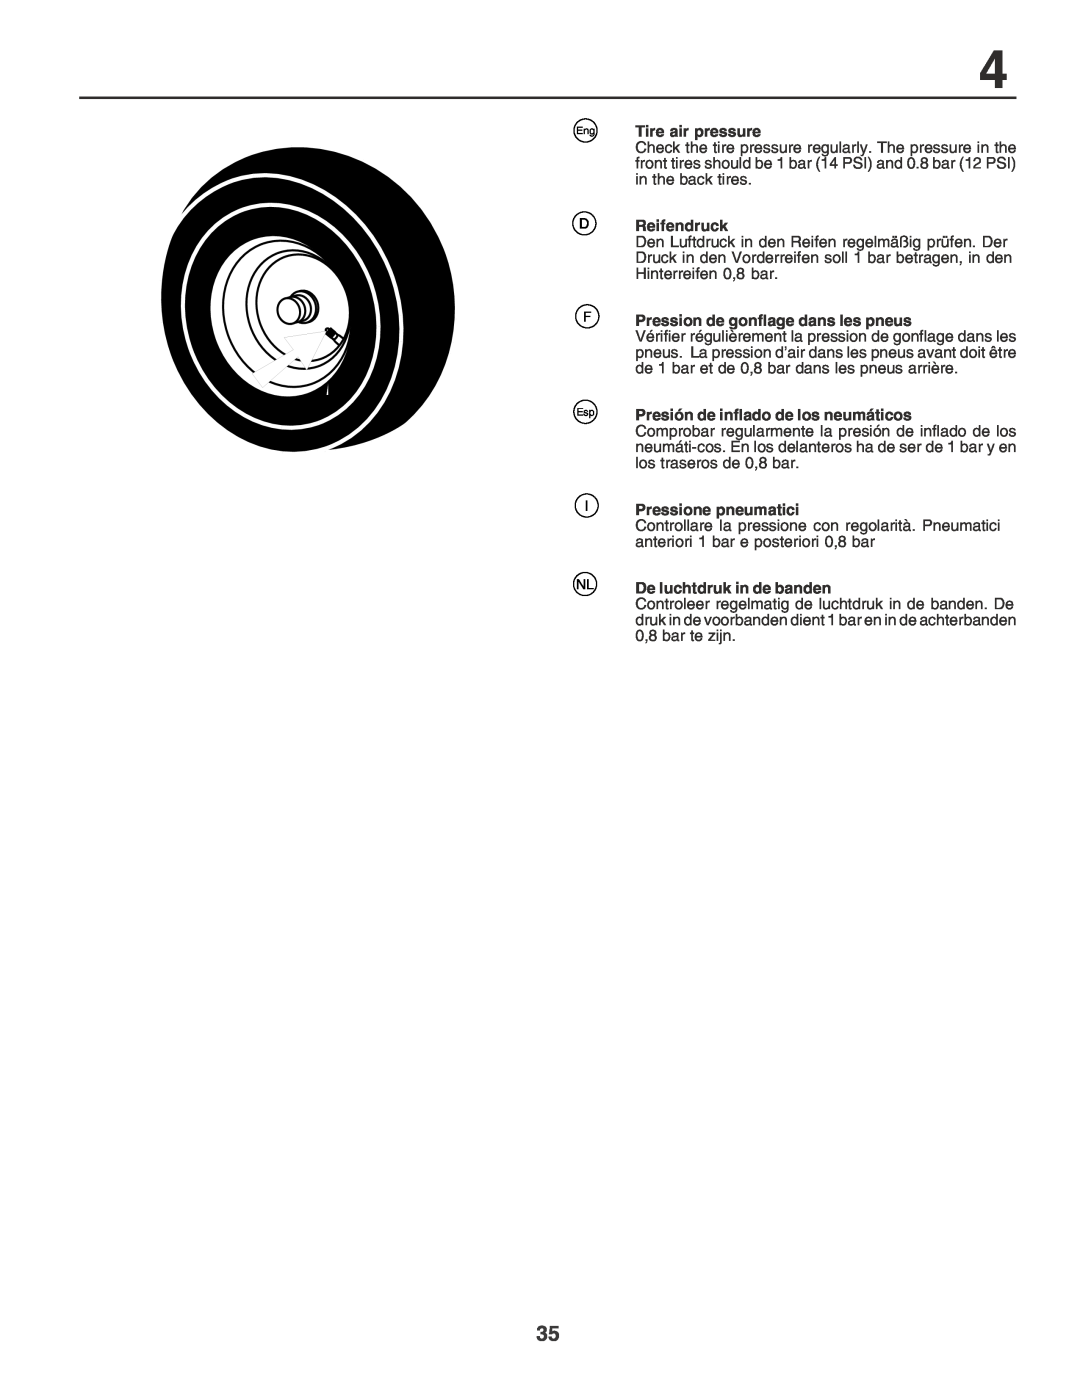 Husqvarna YT155 Tire air pressure, Reifendruck, Pression de gonflage dans les pneus, Presión de inflado de los neumáticos 